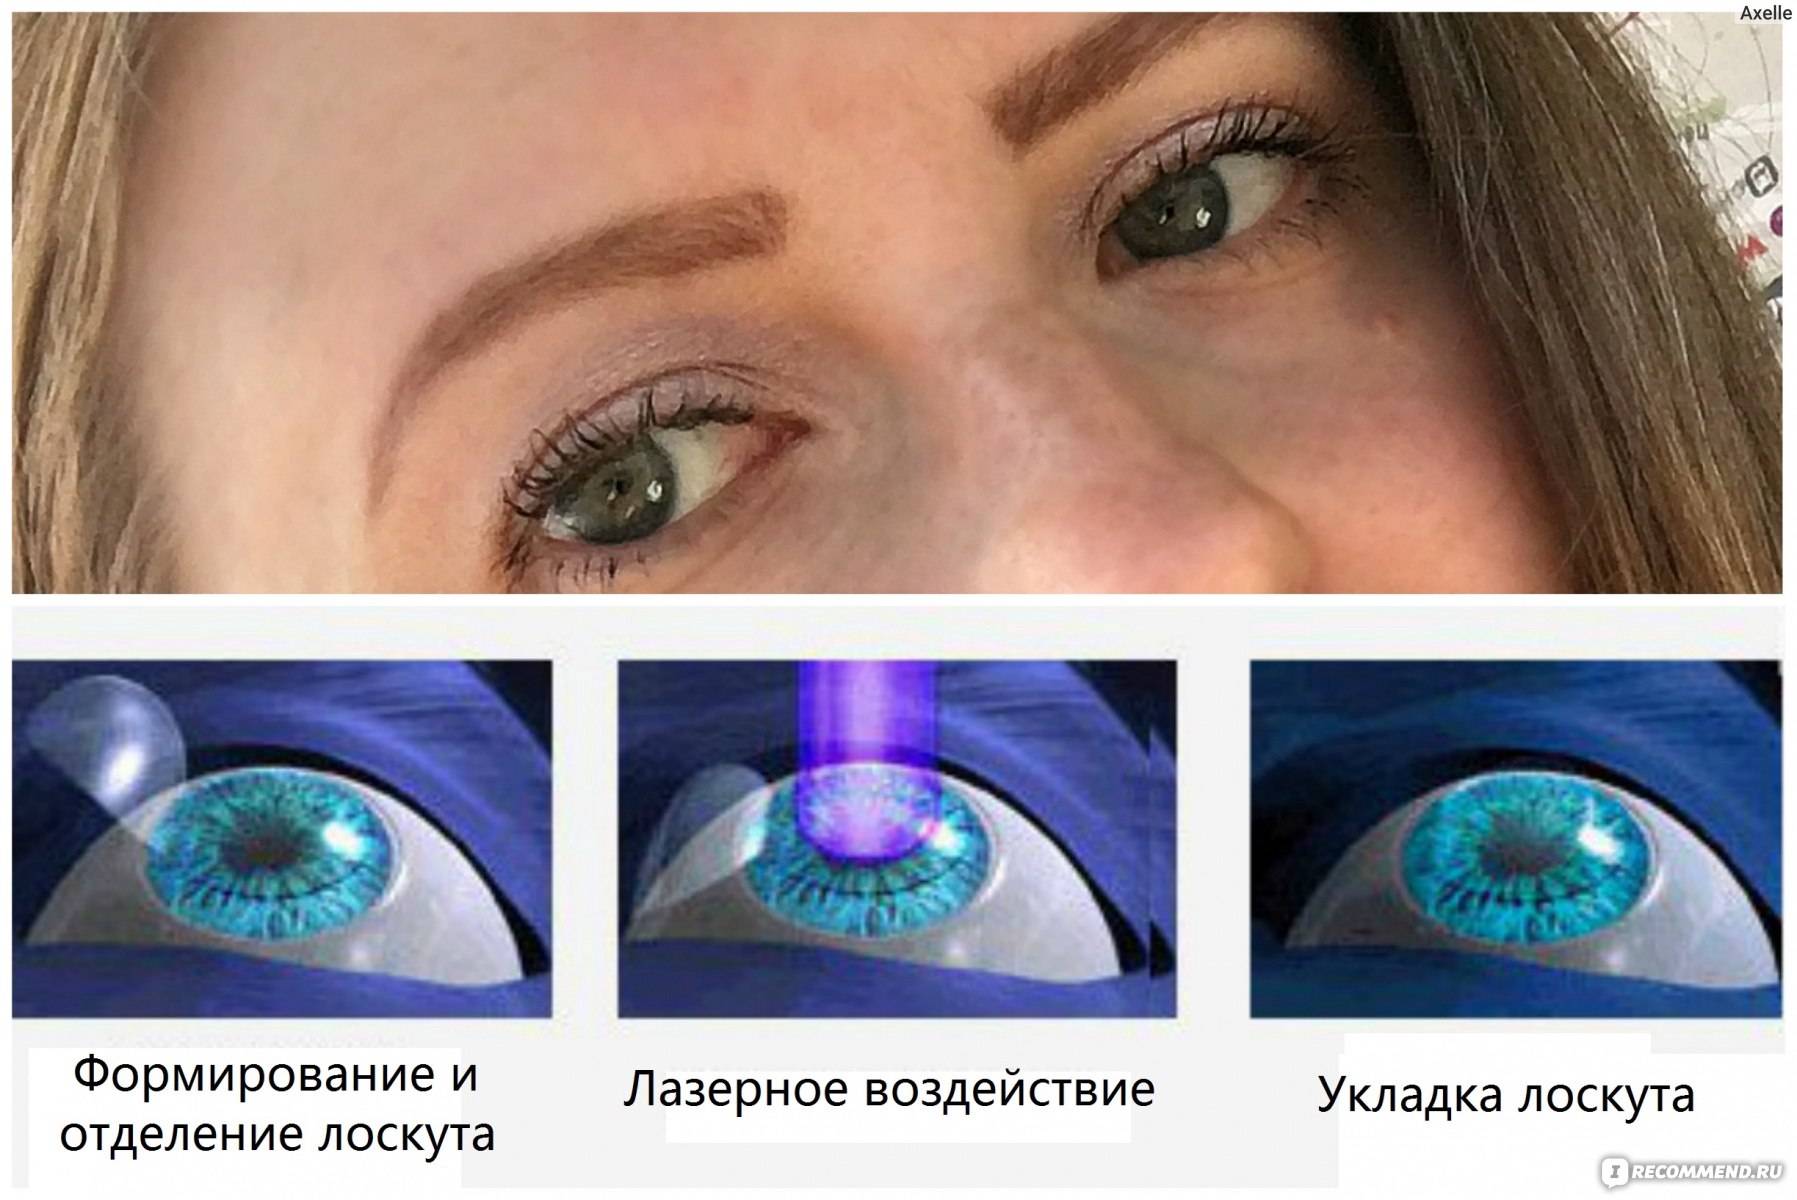 Цены на операцию лазерной коррекции зрения в клиниках москвы